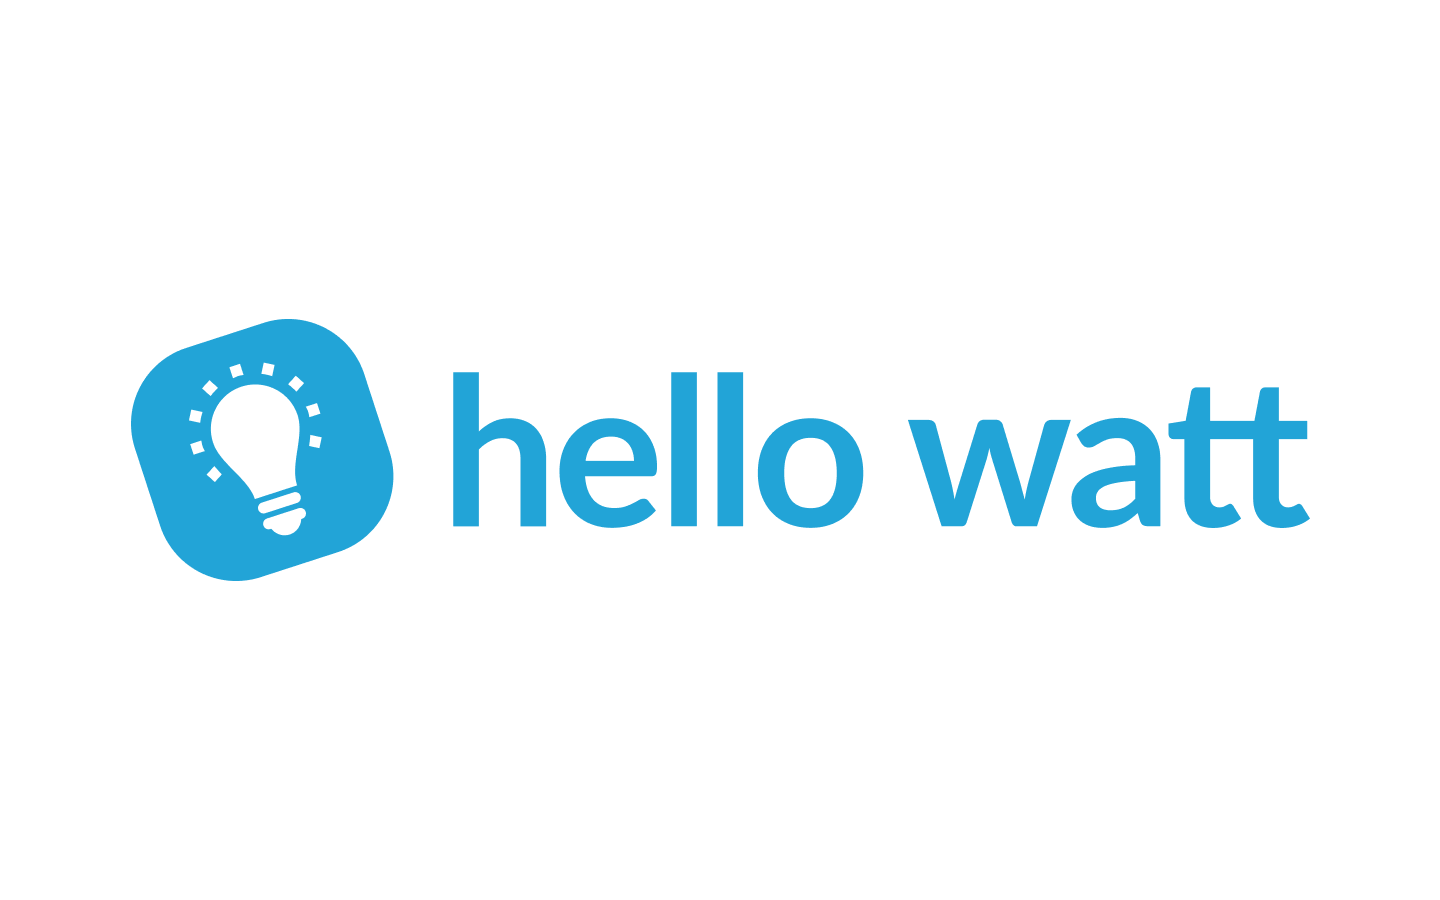 Logo Hello Watt